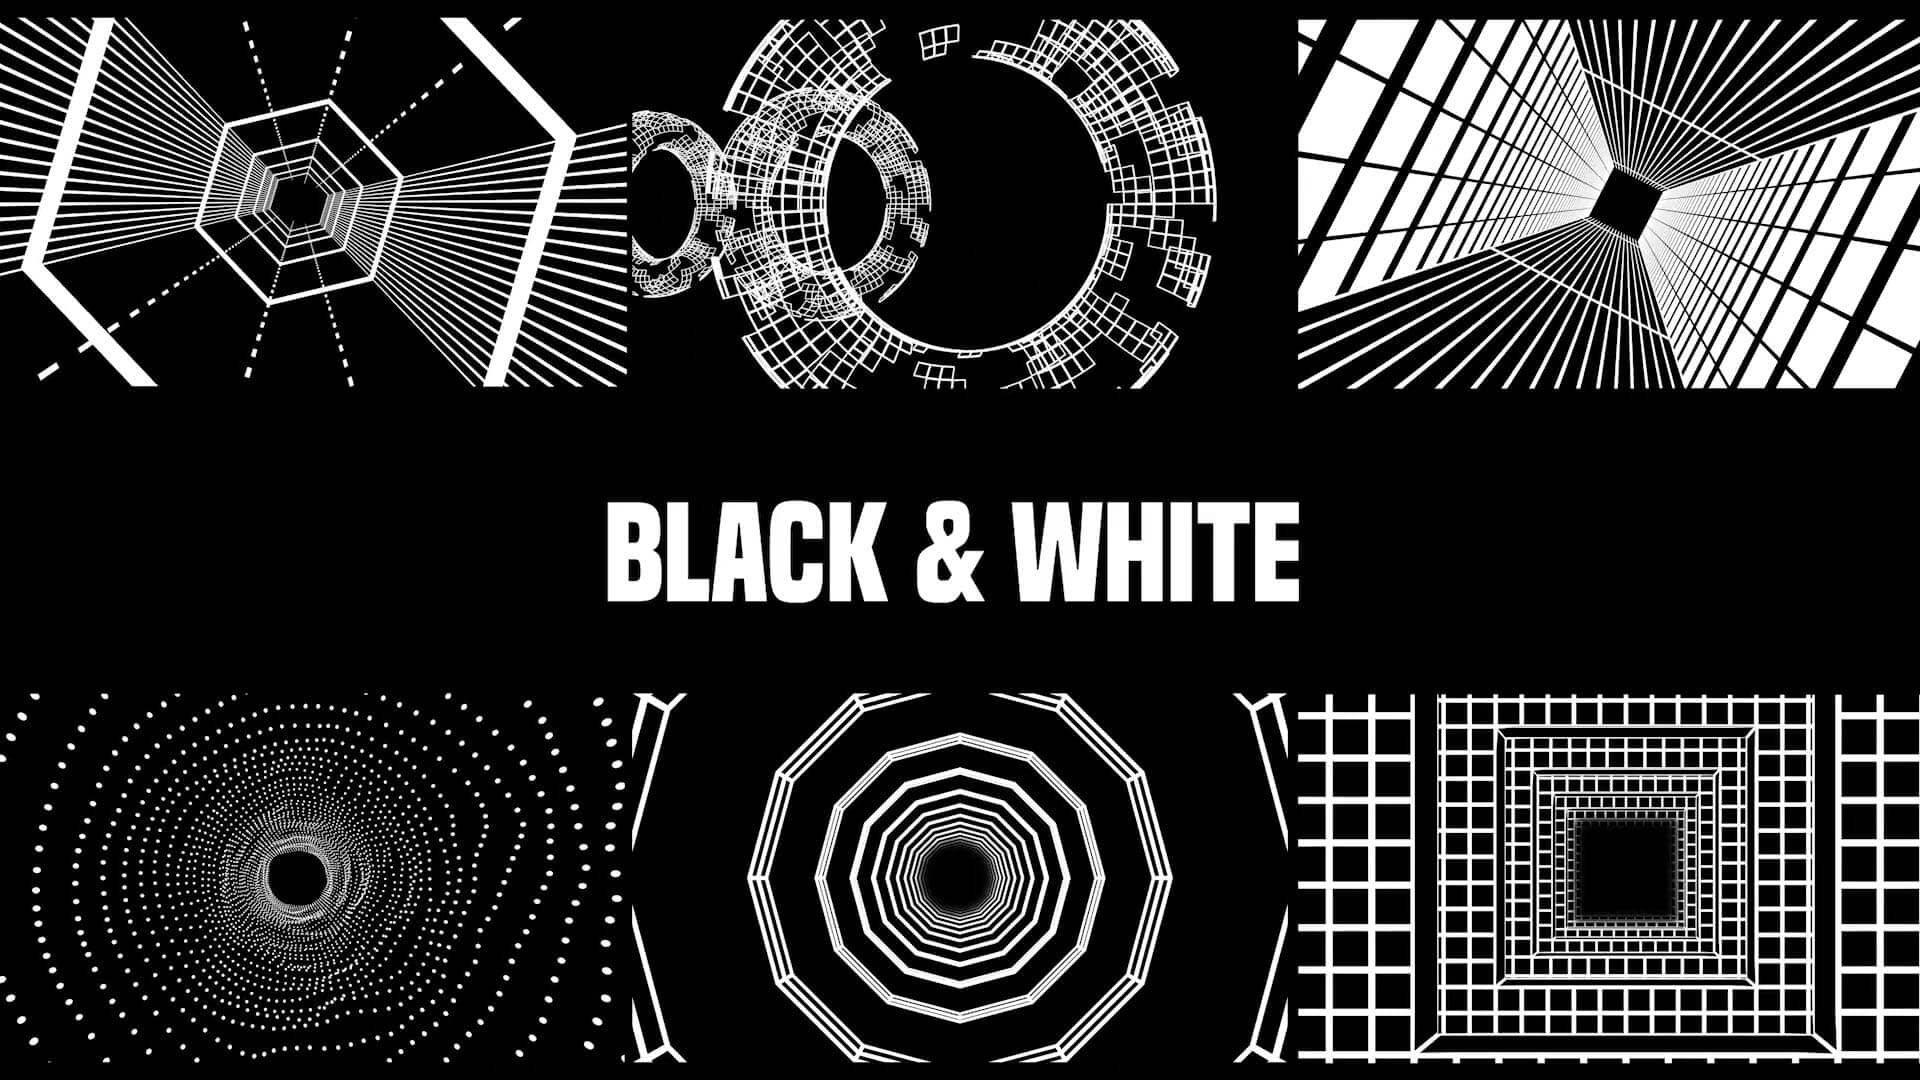 Descubre el VJ Pack Black and White en Crazy Artist 3D. Un pack de visuales geométrico en blanco y negro que incluye 17 clips